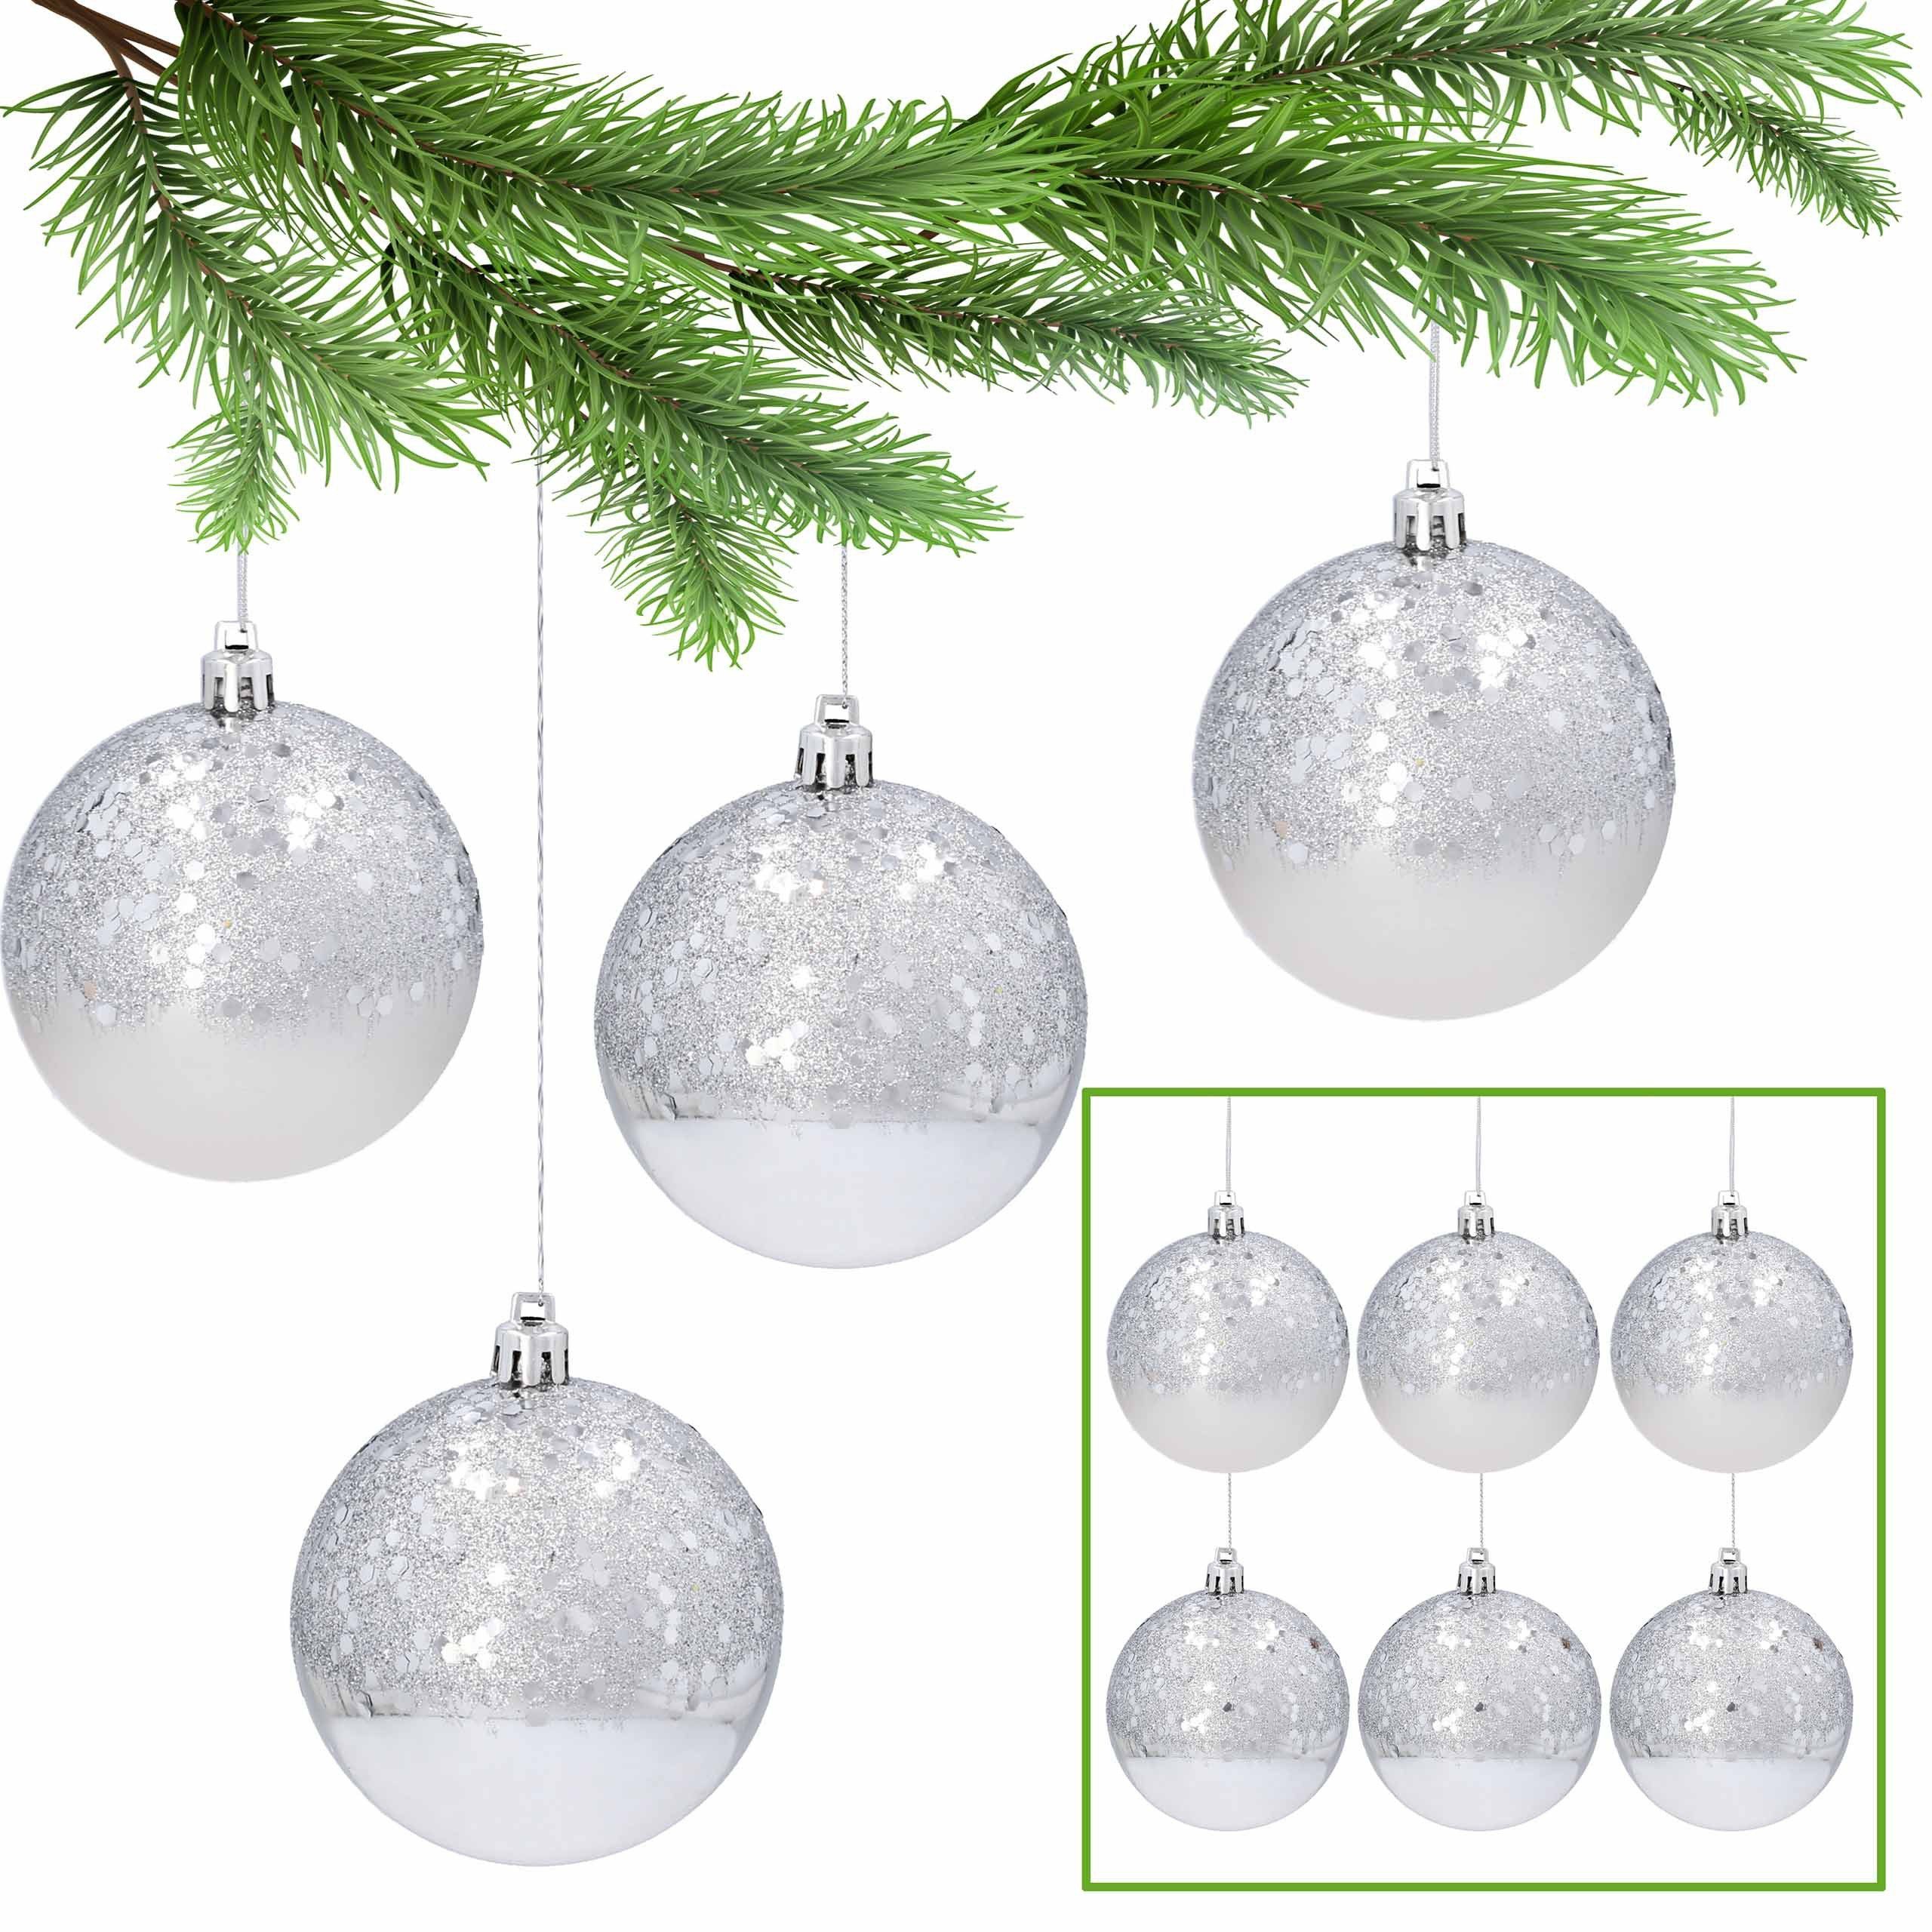 Sarcia.eu Weihnachtsbaumkugel Christbaumkugeln aus Kunststoff mit Glitzer 8cm, 6tlg. 1 Pack